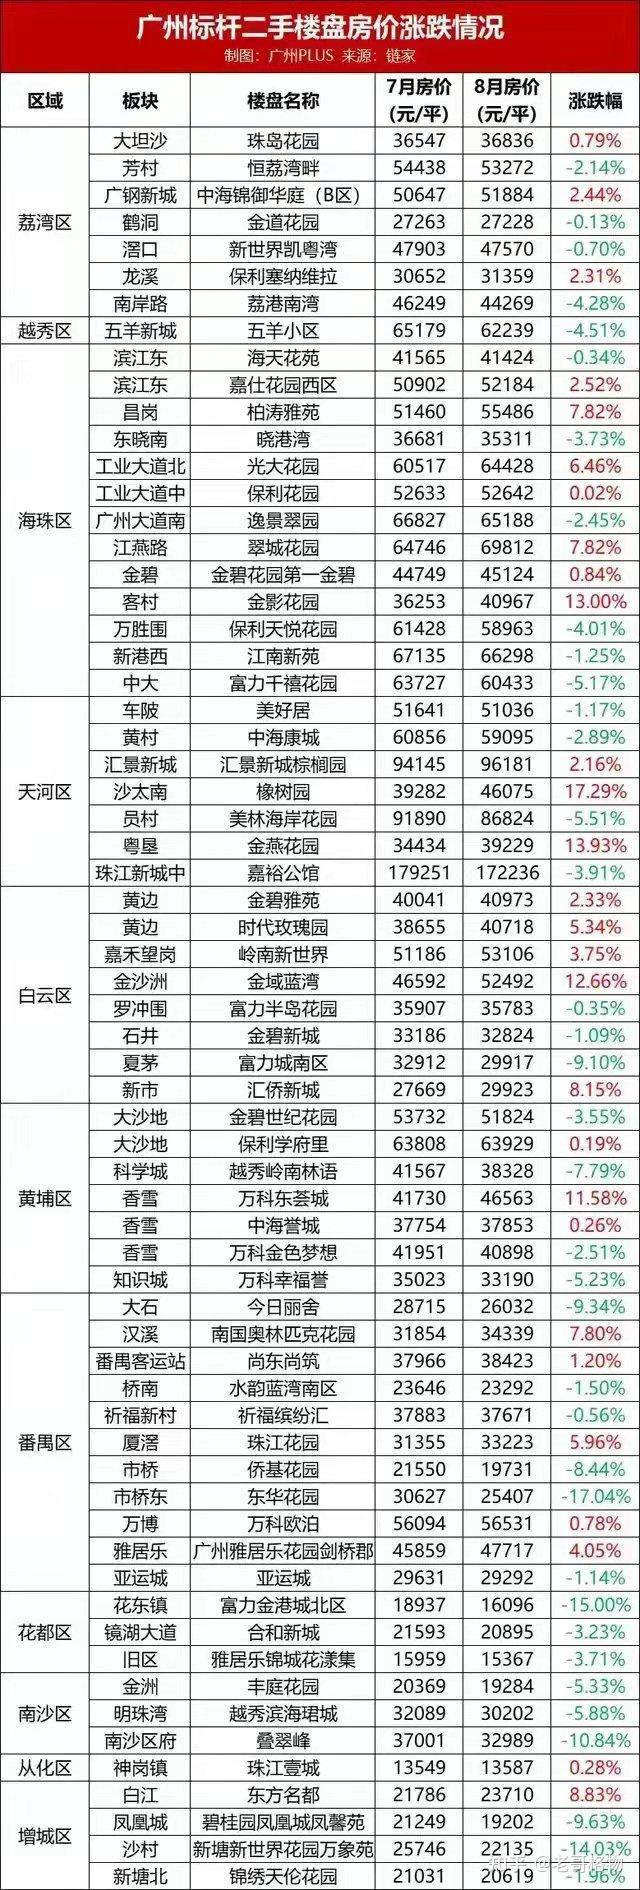 最近两个月的房价涨跌情况,从表中可以看出,广州的二手房价格涨跌不一